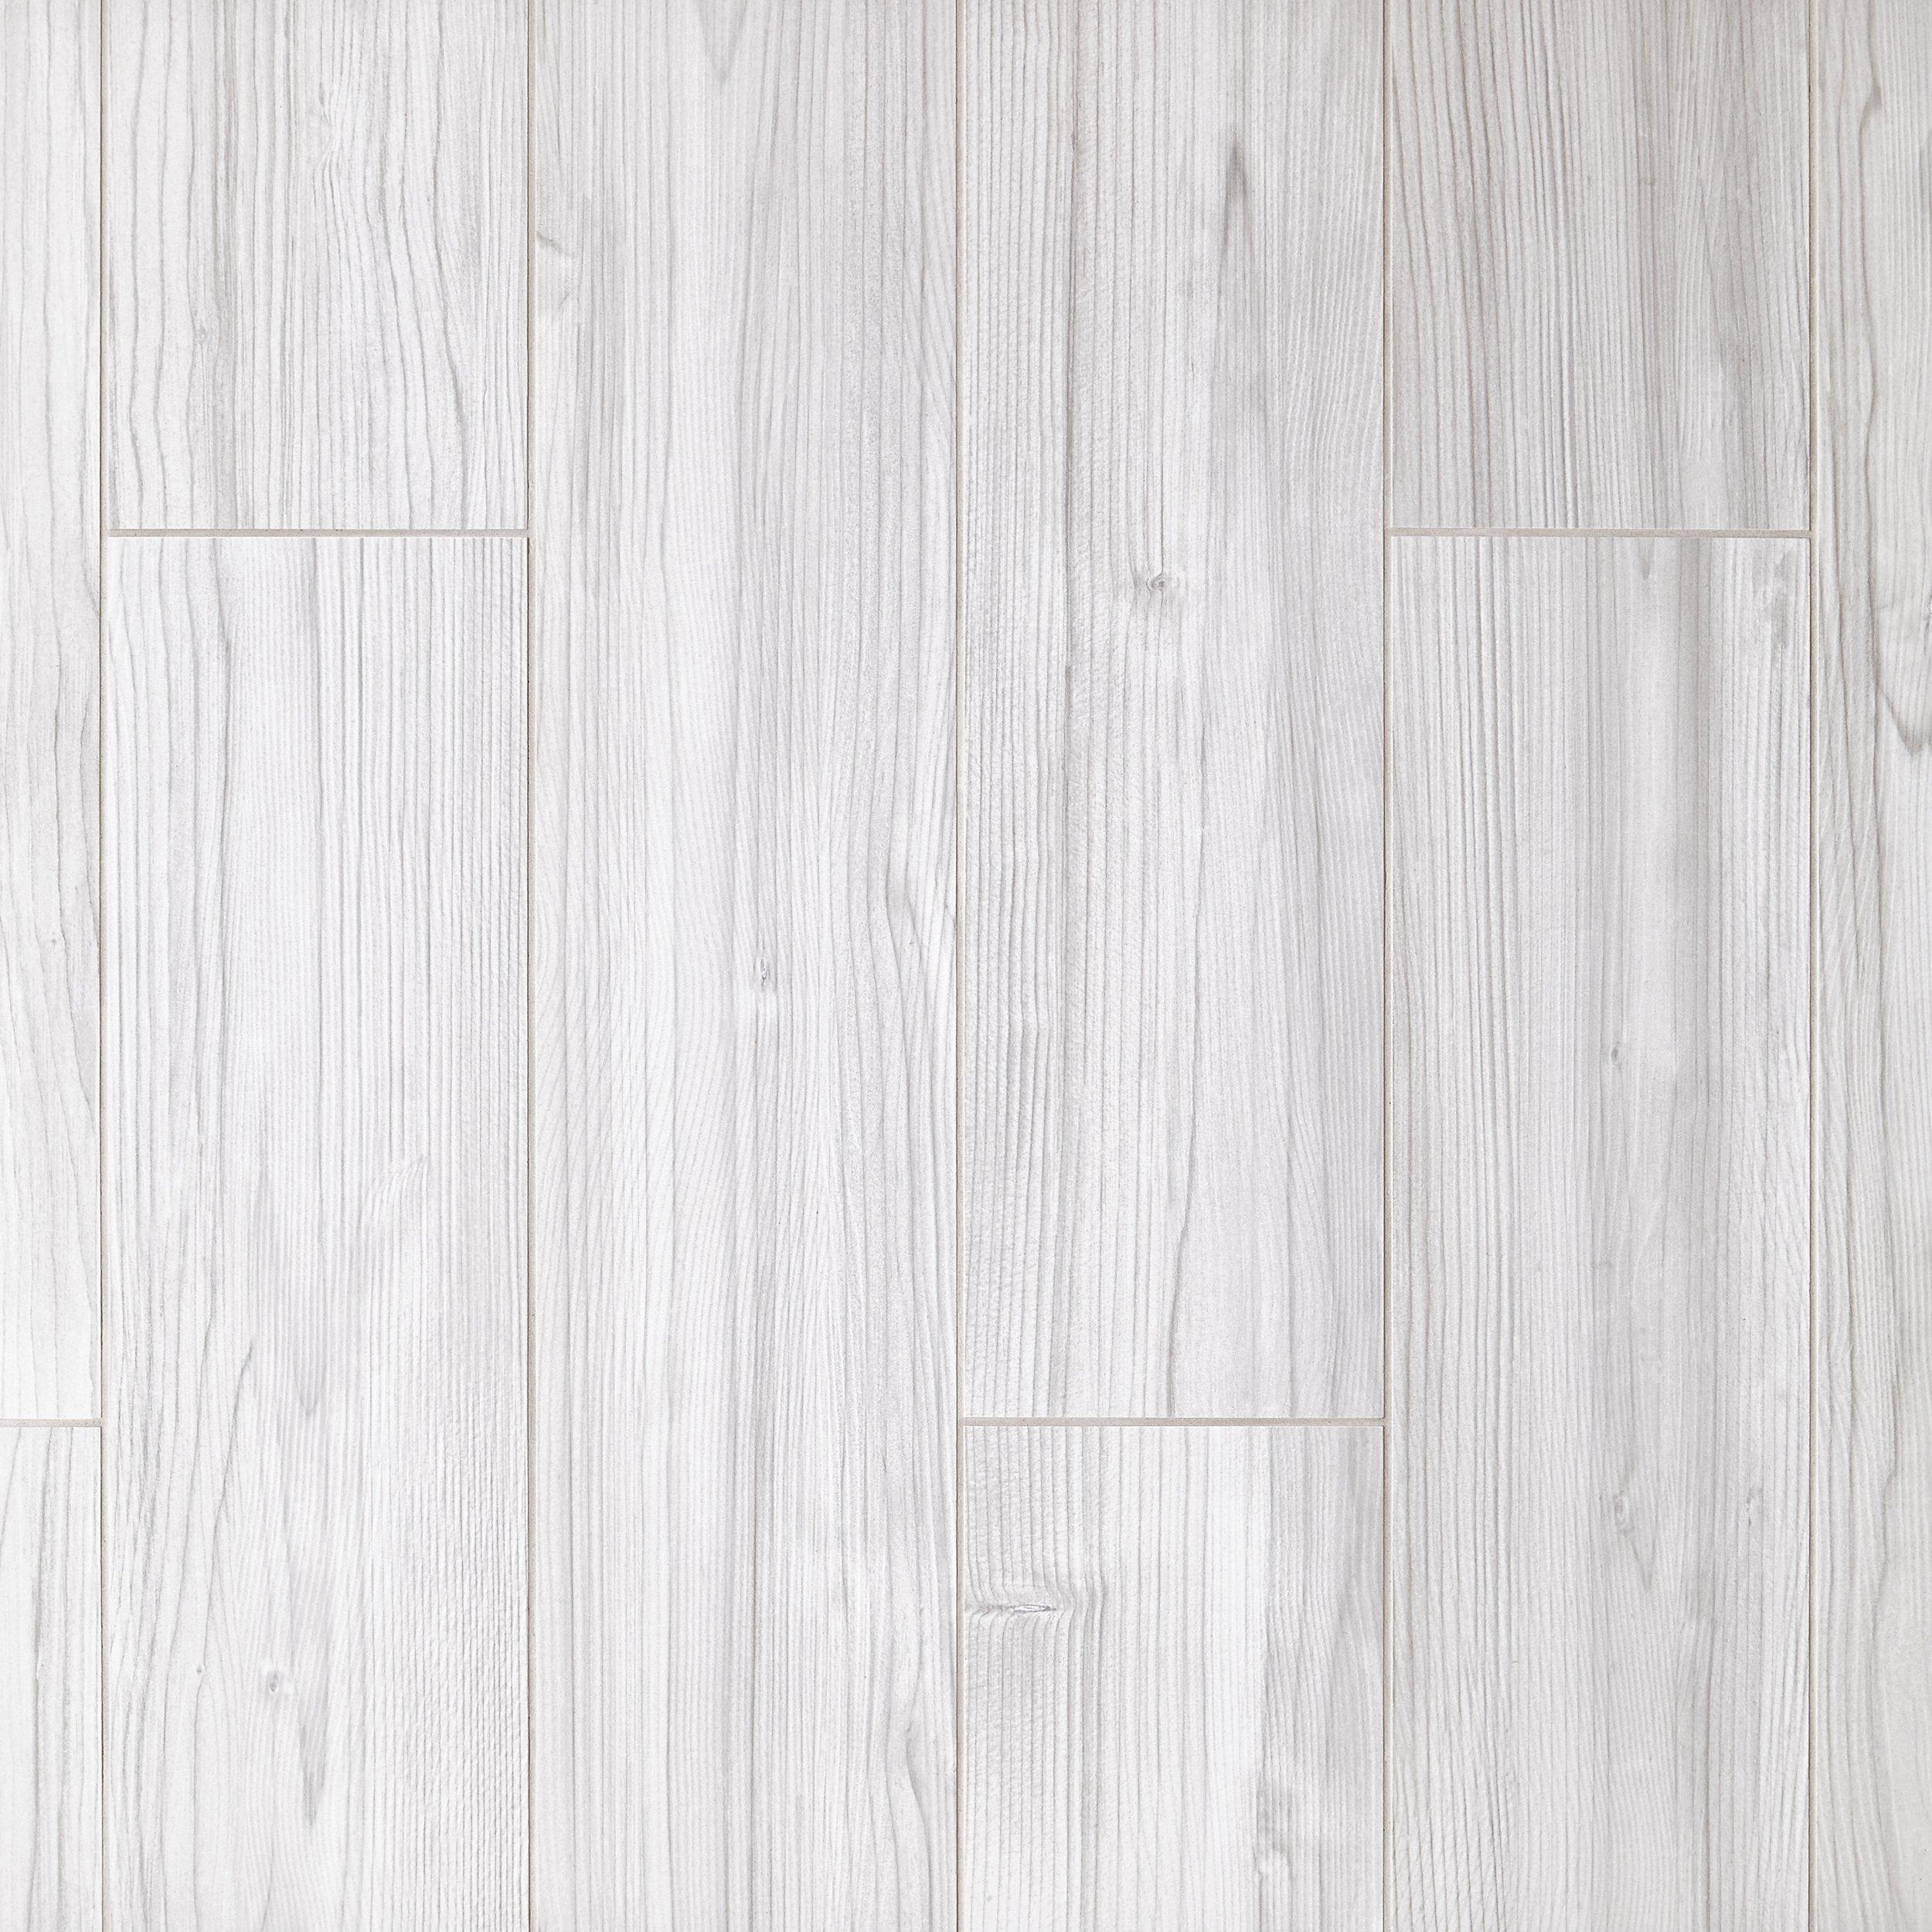 Finland White Wood Plank Porcelain Tile, White Wood Look Ceramic Floor Tile